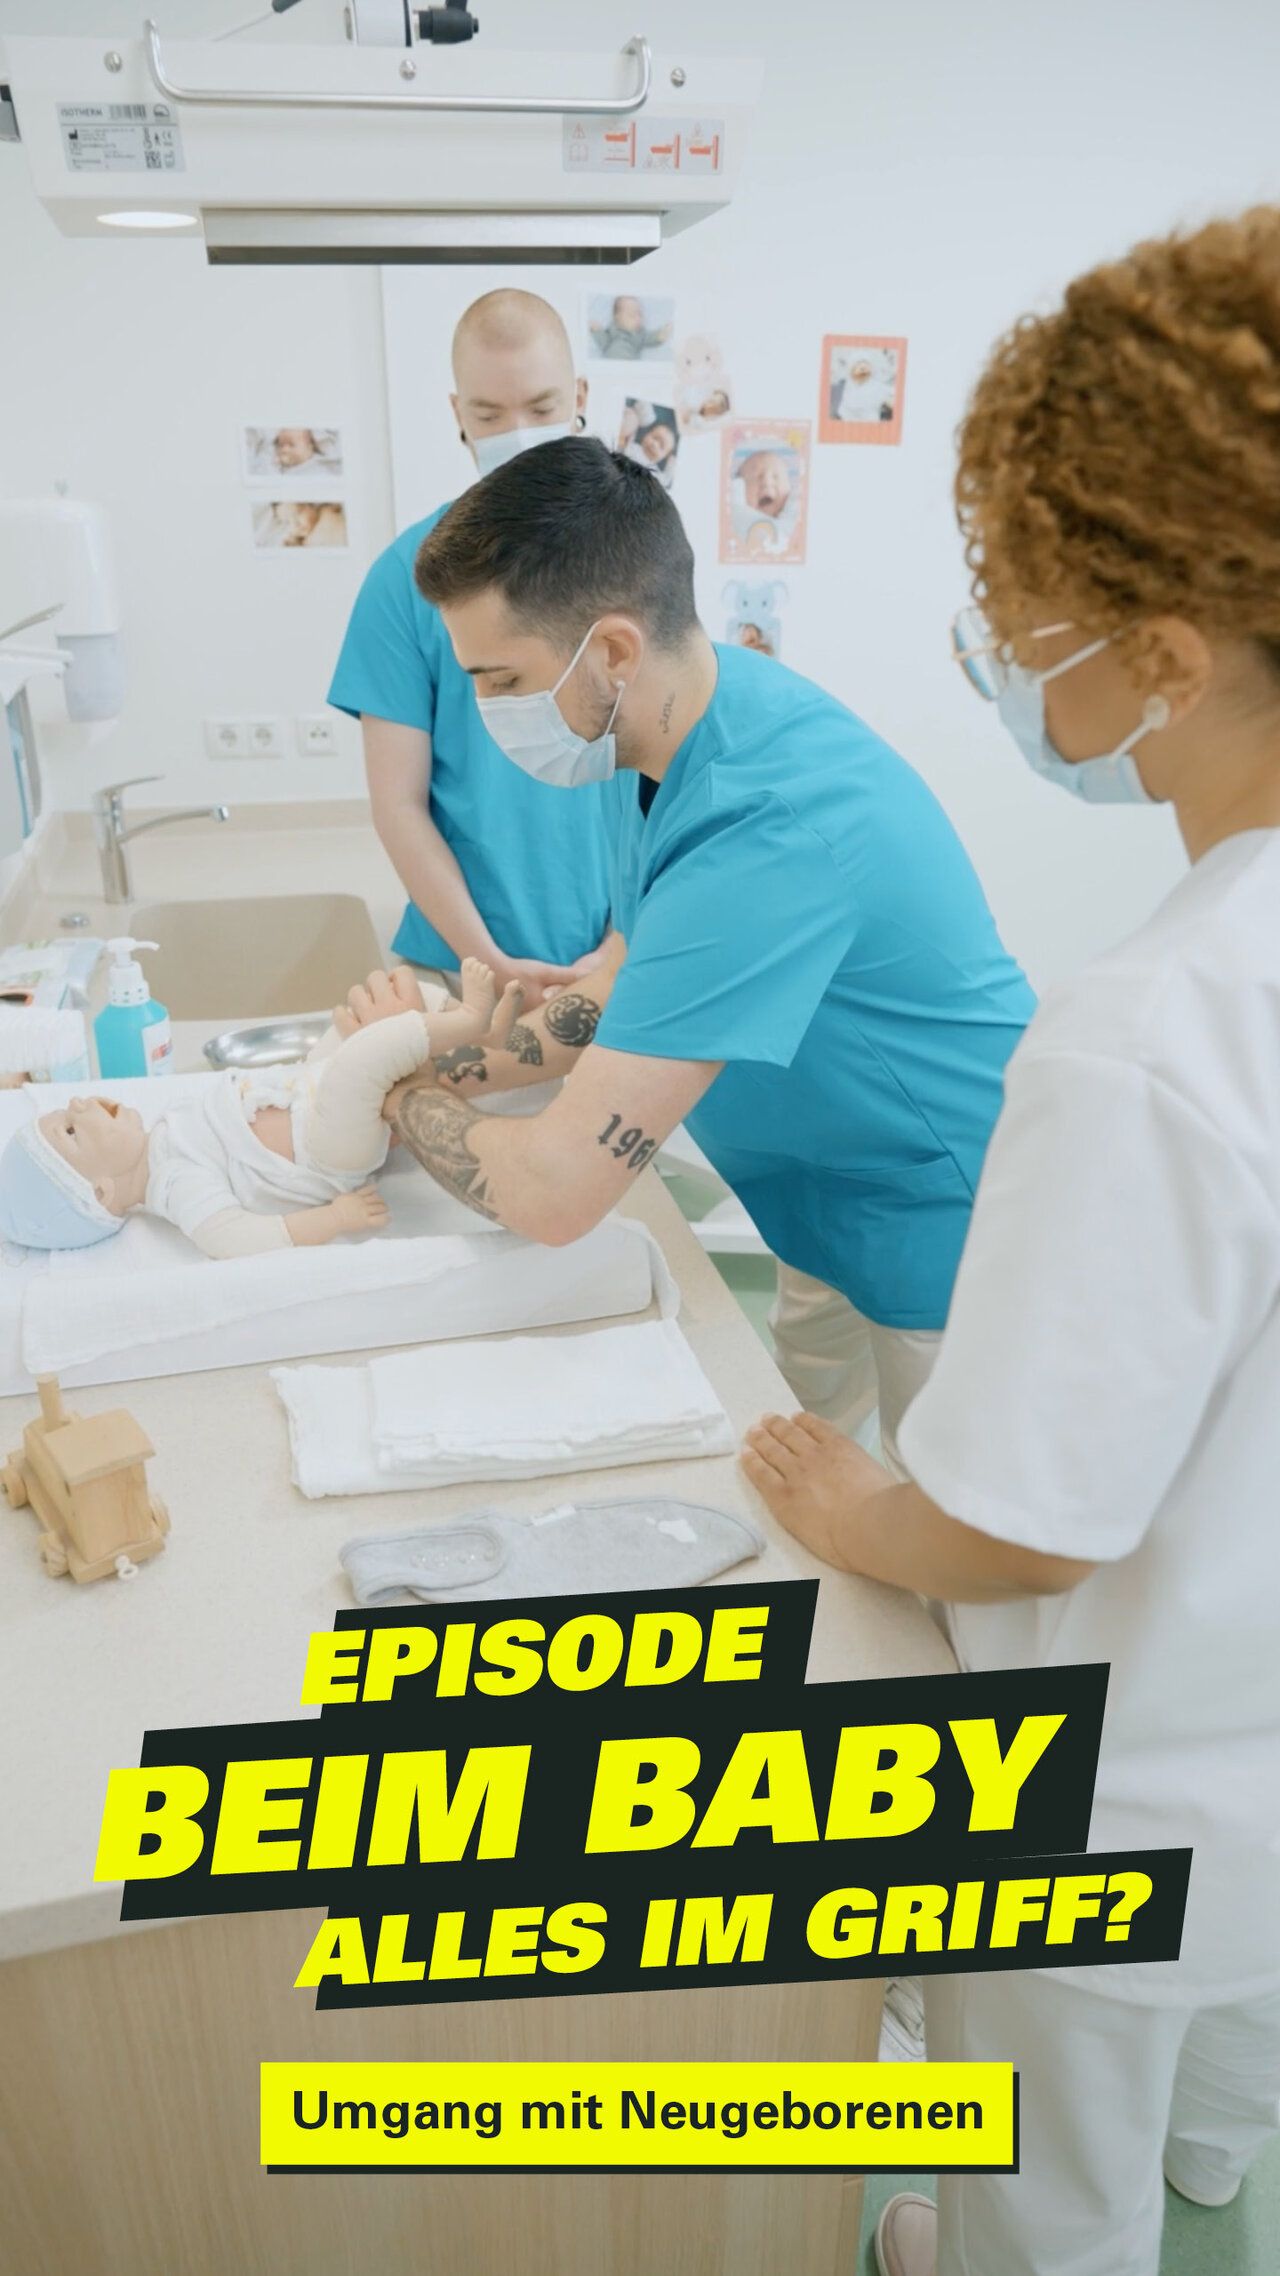 Pflegekräfte kümmern sich um ein Neugeborenes. Dazu der Text: Episode beim Baby alles im Griff?